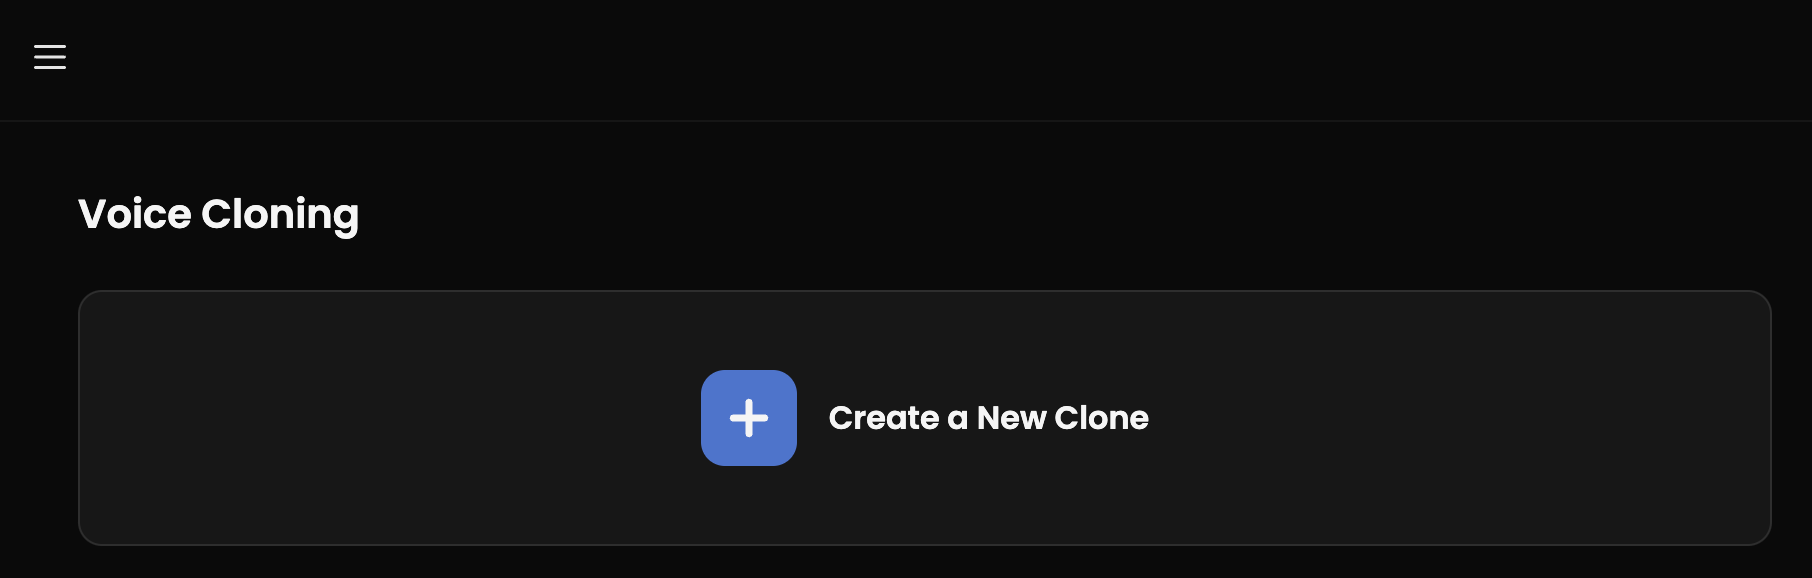 Create a New Clone